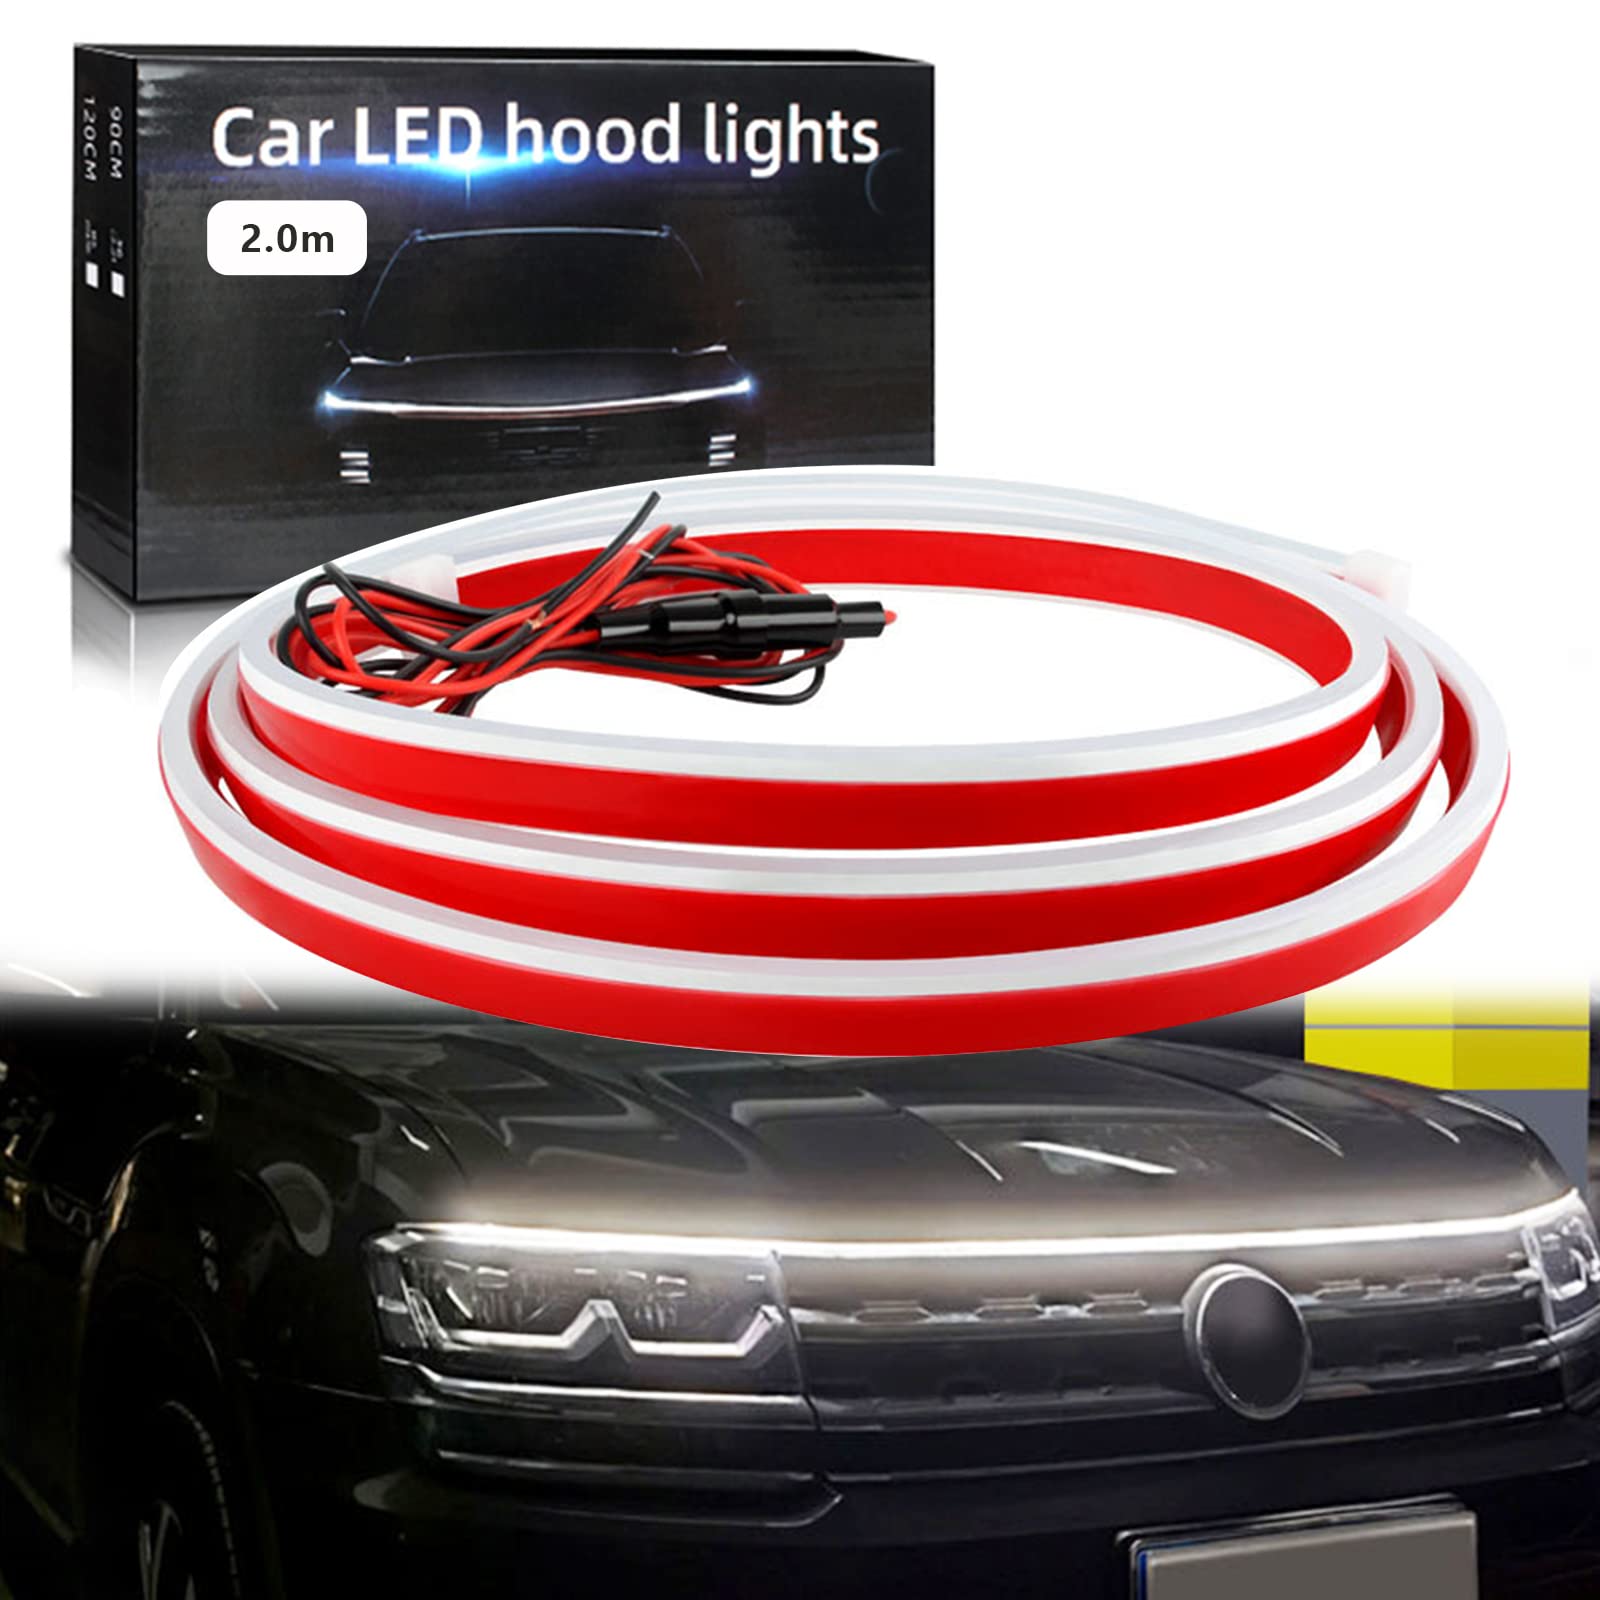 商品情報商品の説明主な仕様 【機能抜群】ご愛車の電源を入れたばかりの時に、LEDテープライトはご車の主人を歓迎しているようです。LEDが流れるように光った後に、常に点灯になります。フードライトストリップとして、華やかな光が車のヘッドに綺麗に光って、抜群にインパクトをアップさせて、運転の安全性を向上させて、運転者の気分も向上させました。br【防水設計＆柔軟性＆超高輝度】流れる LEDテープのボディインターフェースは防水処理を採用して、洗車でも大雨でも心配がありません。高品質のシリコンを採用して、柔軟性を持って、曲面にも貼り付けできます。高輝度のLEDチップを搭載して、かなりの明るさを実現できて、昼間でも十分の認知出来る明るさを備えています。br【取付簡単＆多用途】極薄型デザインで、隙間なく設置できて、取付け位置を確認後に両面テープを剥がして固定するだけです。DC12Vの電圧の場所で使えます。自動車、SUV、バン、トラック及びにジープなどのにテープライト、ディライト、ボンネットライト、車装飾ライト、車のドア ライト、ペダルライト、ボートライトストリップなどとして最適です。アイデア次第で使い方がたくさん！br【商品仕様】LEDテープ フードライト（流れる機能搭載） ／ 色：ホワイト ／ 電圧：DC12V ／ パワー：9W ／ 電流：0.76A ／ 使用寿命：50000時間以上 ／ 防水加工済み ／ 材料：シリコン ／ 高輝度 ／ 長さ：200CM ／ ご注意：ギフトボックスの様式は二つがあって、ランダムに出荷します。br【他のサイズについて＆365日保証＆24時間サービス】工場直売所ですので、多くのサイズを選択できて、0.6M/0.8M/1M/1.2M/1.5M/1.8M/2M/2.2M/2.4Mがあります。 他のサイズが必要な場合は、直接お問い合わせください。 大量に購入したい場合は、指定された長さをカスタマイズできます。弊店はご注文日より365日品質保証があります。※ご注意：ご購入前に必ず販売元GZRUICA（商標登録第6554143号・ブランド登録済み）をご確認ください。※商品の不良や故障等ございました折はメールにてご連絡を下さいませ。25時間以内返答で、新品交換や返金などの解決策がご提供頂します。